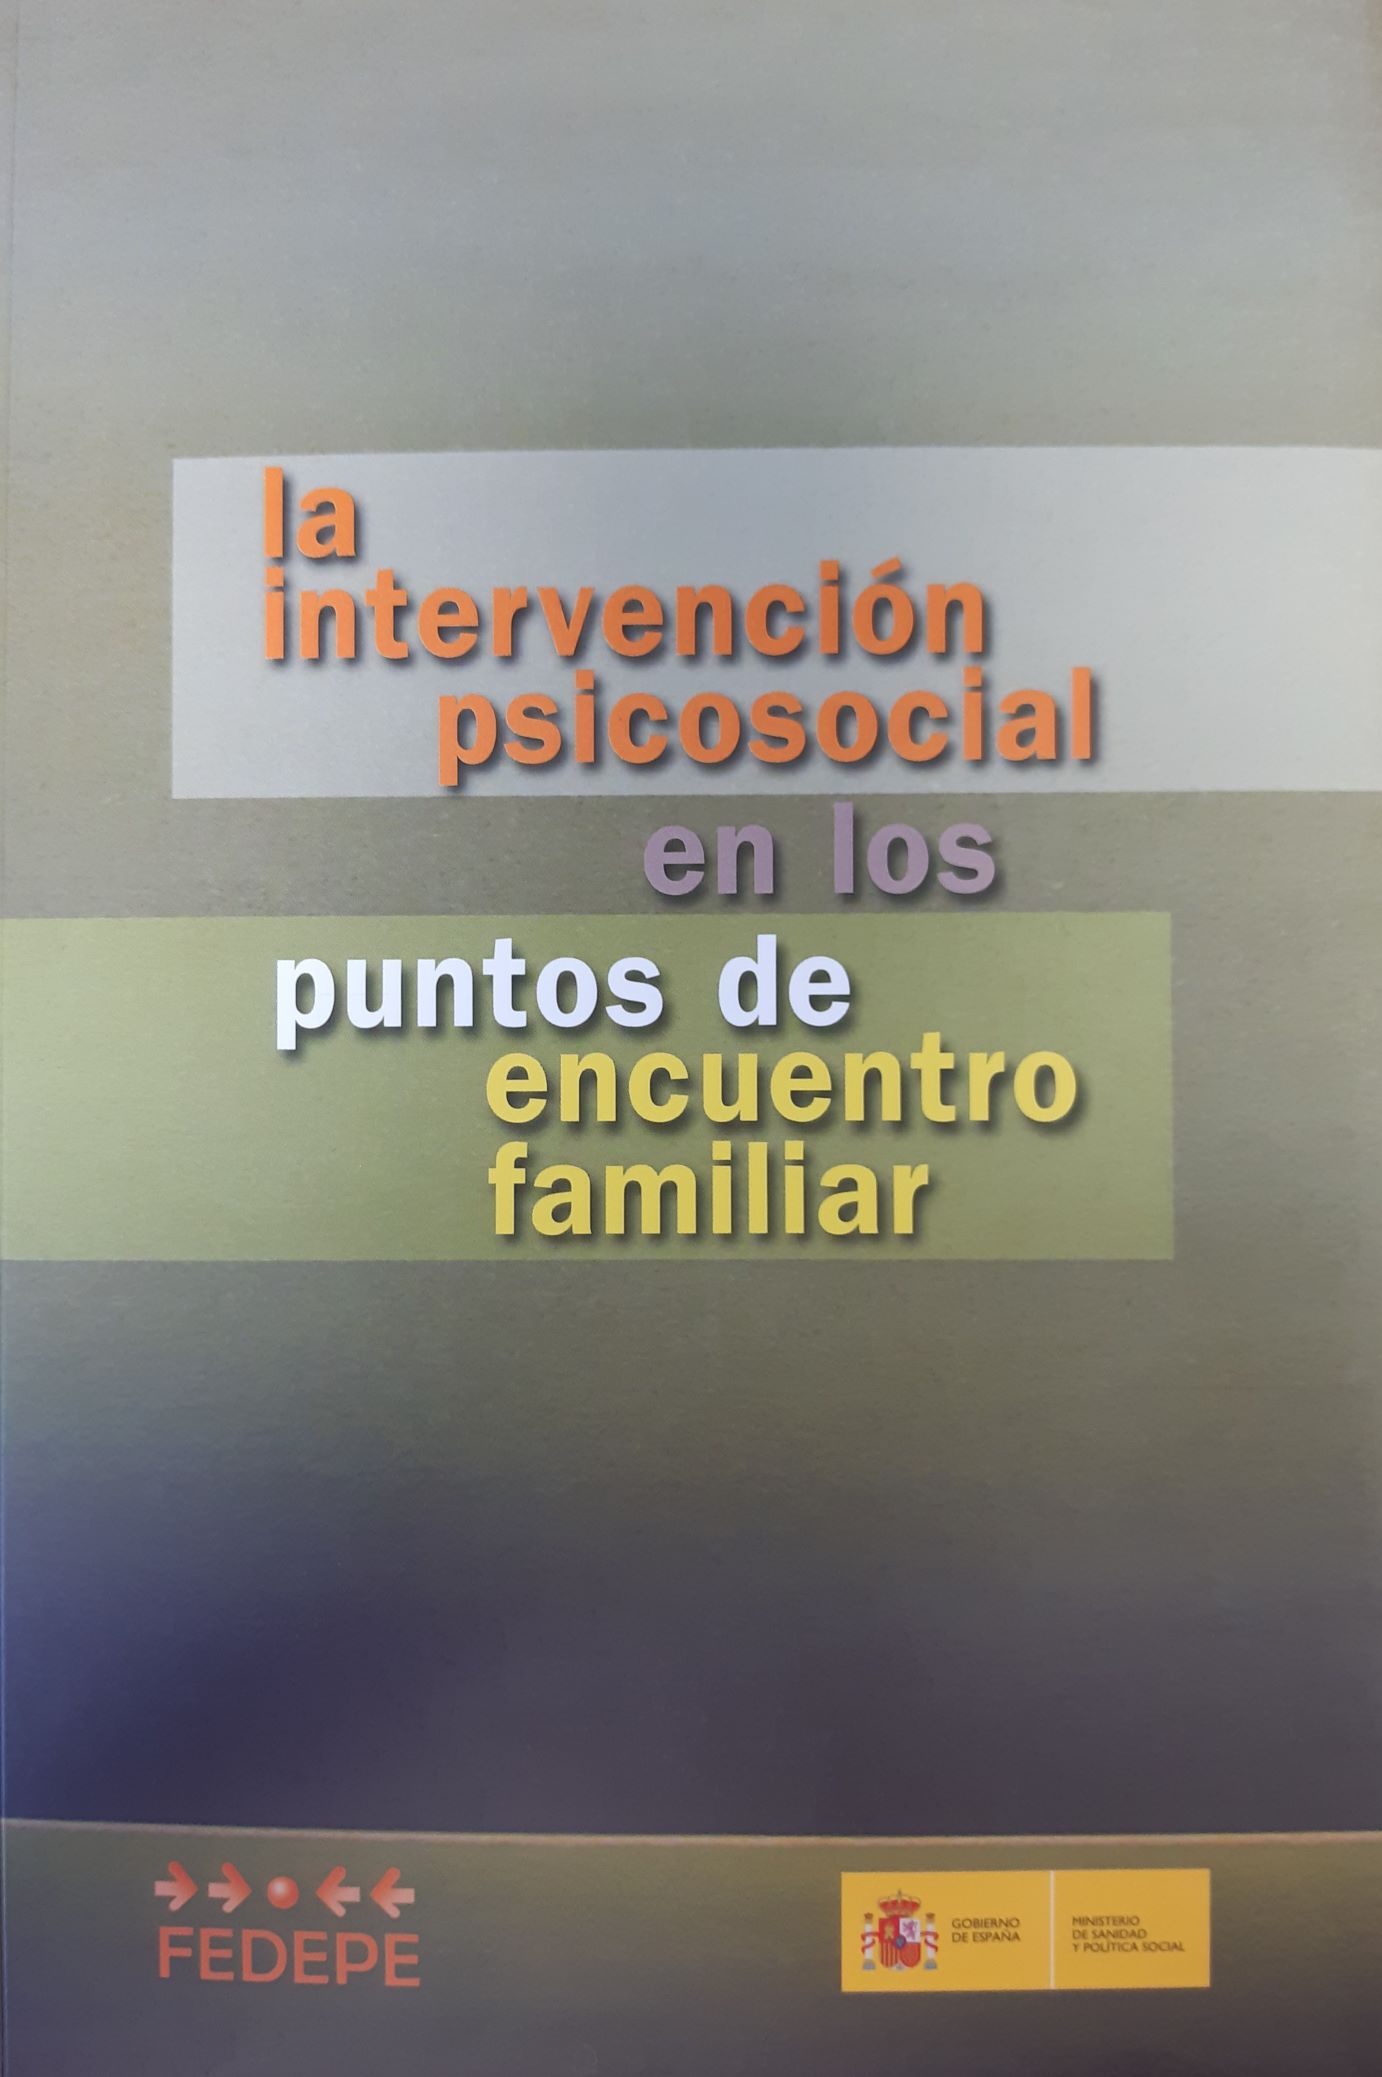 Imagen de portada del libro La intervención psicosocial en los puntos de encuentro familiar